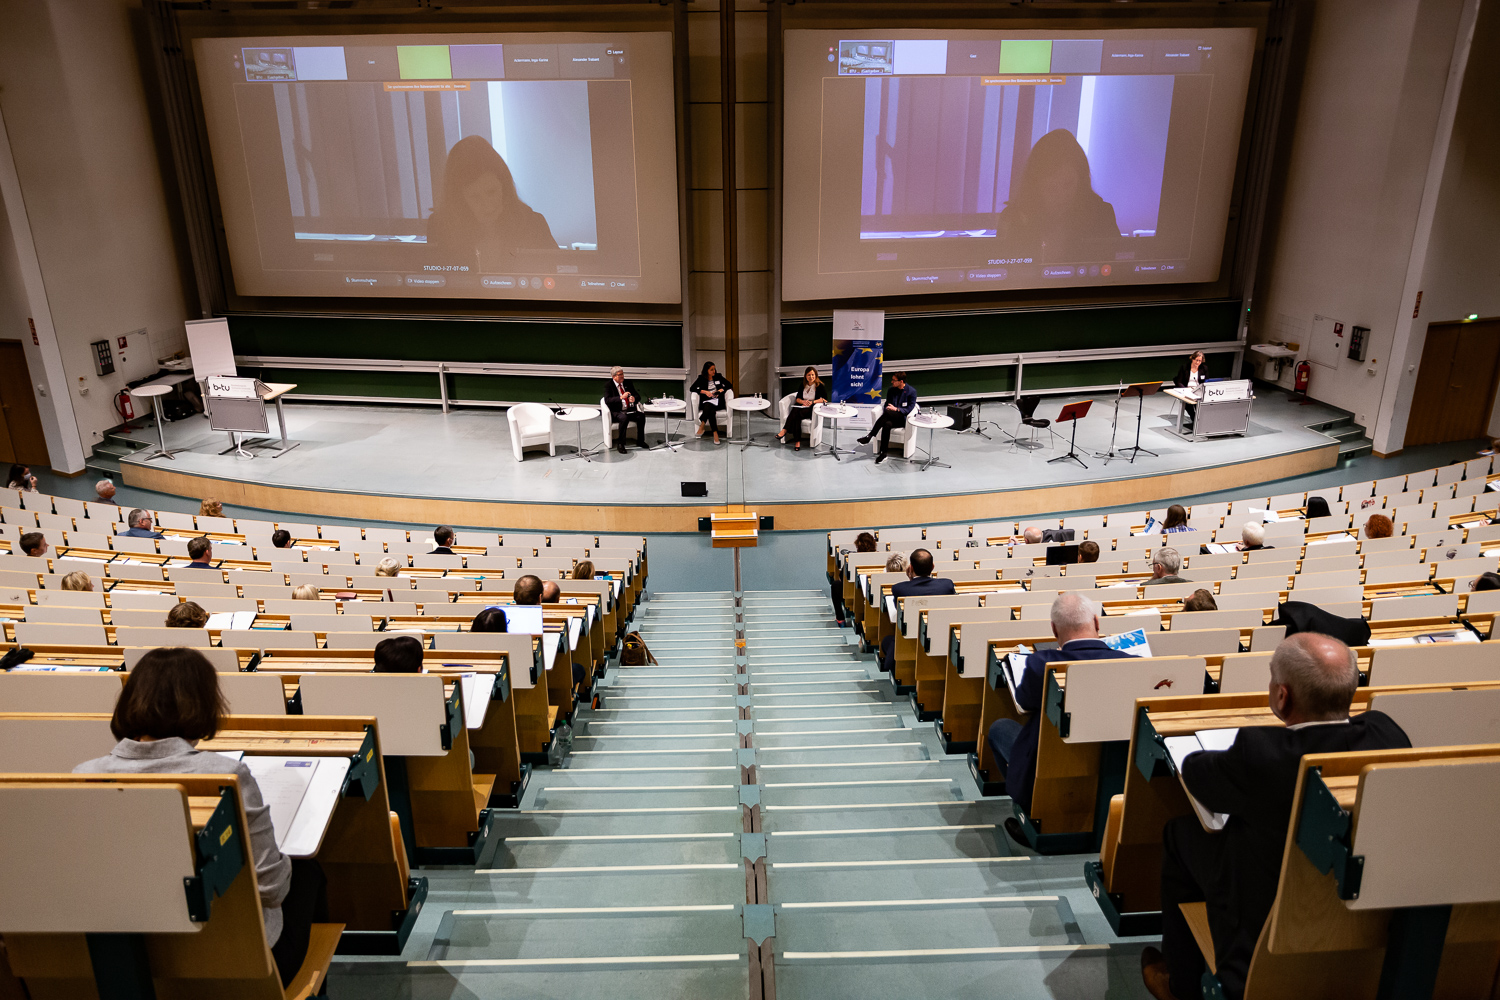 Bild: Das Bild zeigt die Podiumsdiskussion, aufgenommen von den Rängen des Audimax aus, mit Blick auf die Bühne.